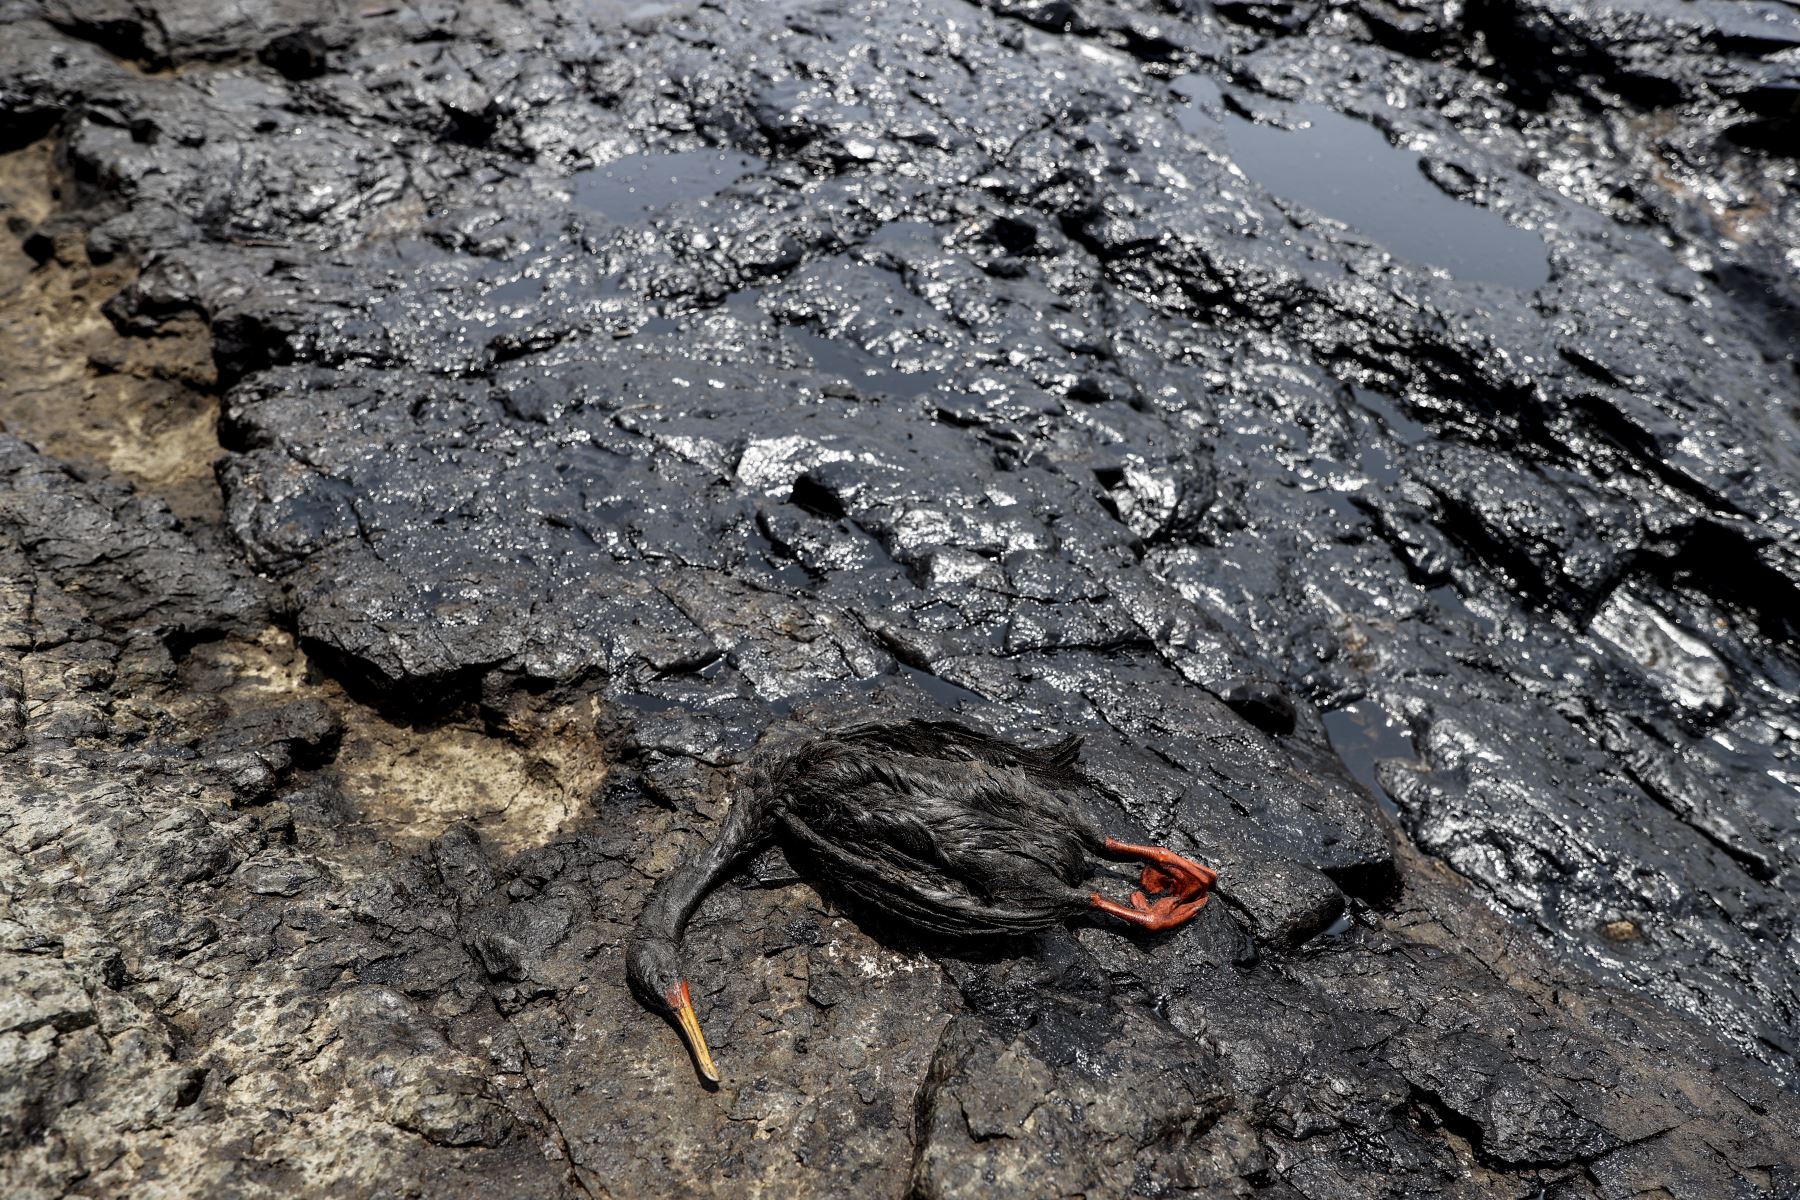 Un derrame de petróleo producido por la refinería La Pampilla que es operada por Repsol, ha contaminado la playa Cavero de Ventanilla y otras playas aledañas y de Ancón, dejando graves daños en el ecosistema y en la fauna silvestre. Según Repsol, el derrame se produjo por el fuerte oleaje ocasionado por la erupción volcánica en Tonga. “Esta terrible situación ha puesto en peligro la flora y fauna en dos áreas naturales protegidas a más de 18,000 kilómetros cuadrados como la Reserva Nacional del Sistema de Islas, Islotes y Puntas Guaneras, Islotes de Pescadores y la Zona Reservada Ancón”, indicó la Cancillería. Foto: ANDINA/Jhonel Rodríguez Robles